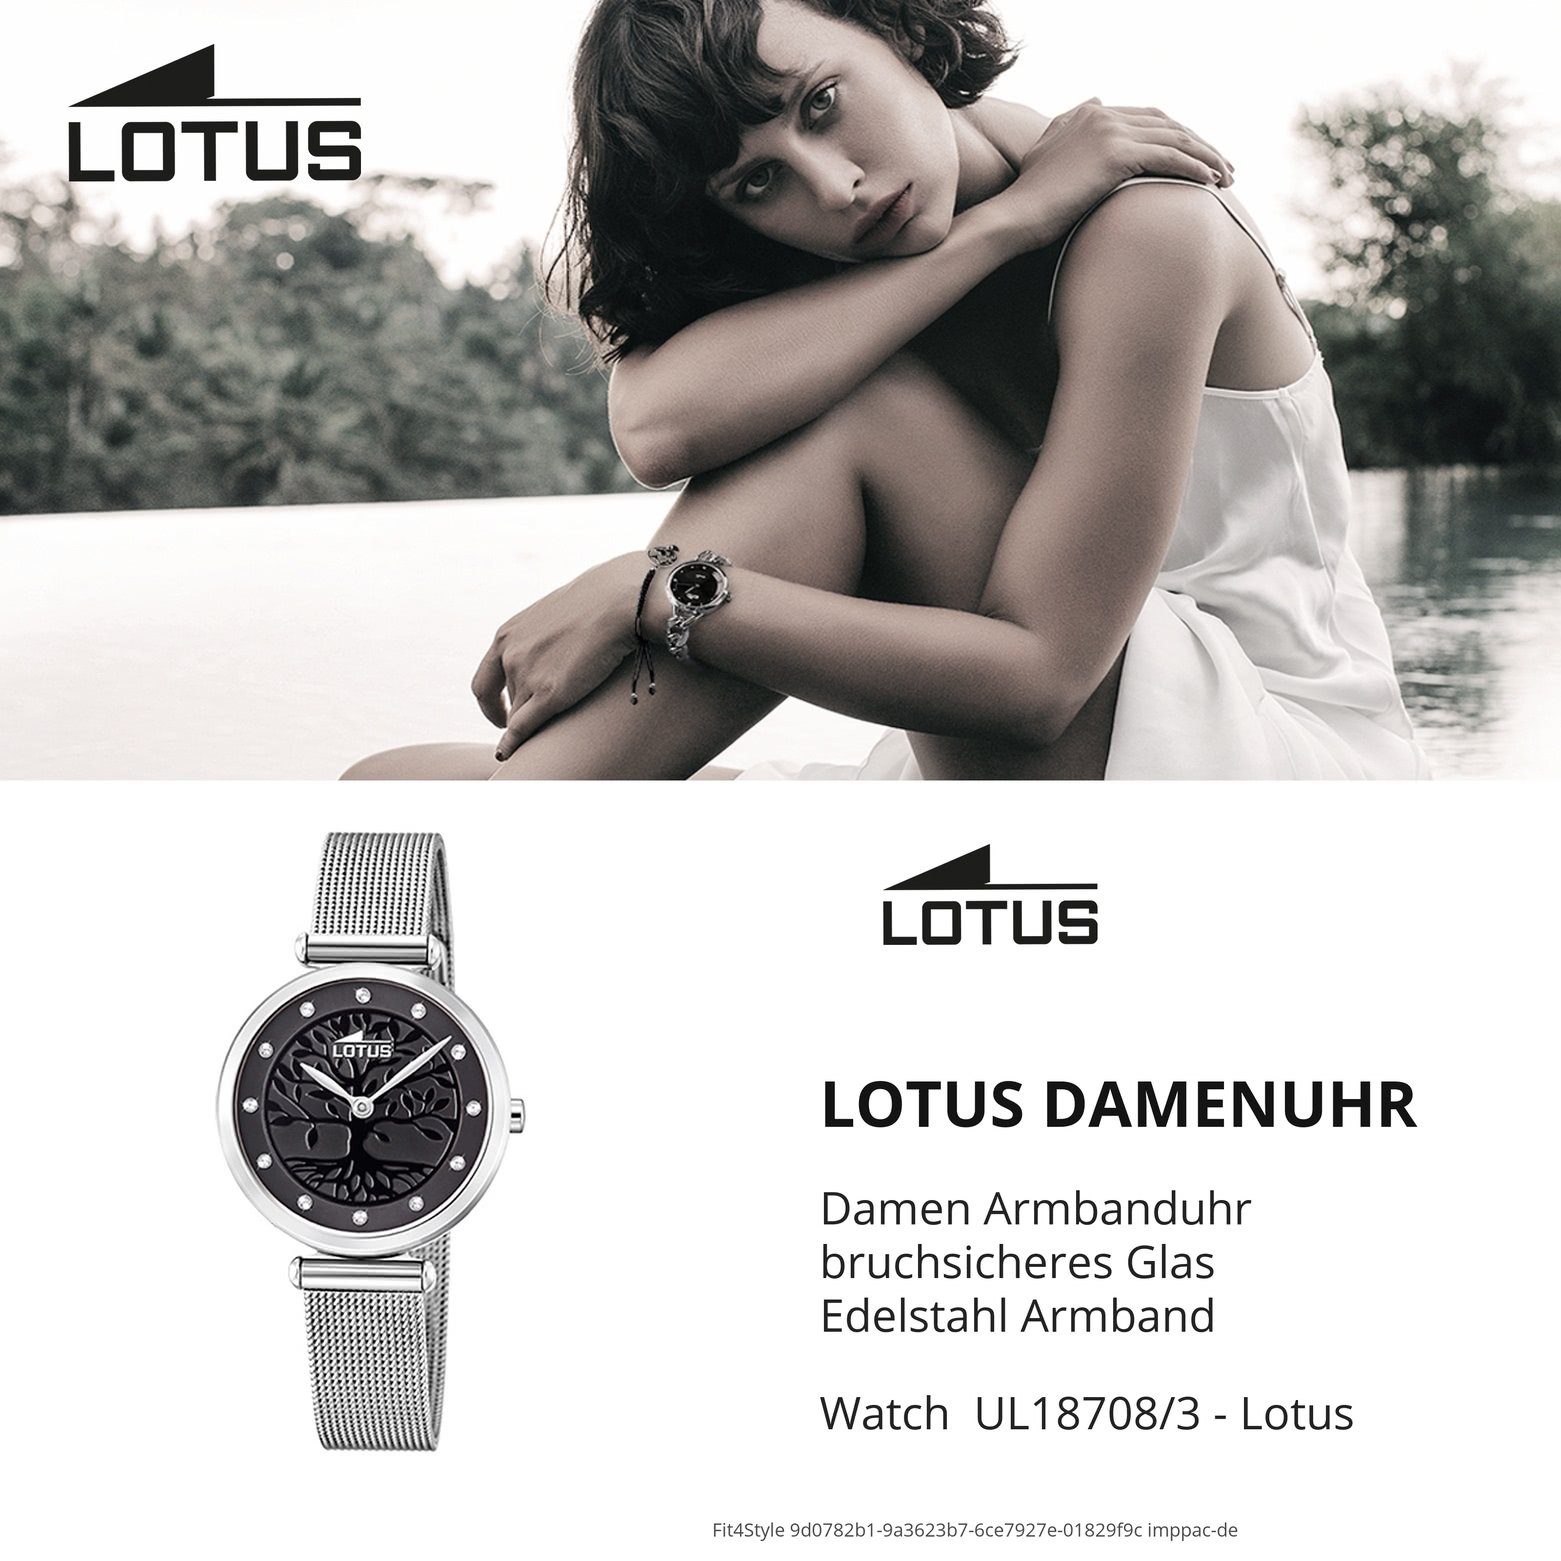 Lotus Quarzuhr LOTUS Damen Uhr (ca. 29mm) klein rund, Fashion 18708/3, Edelstahlarmband Damenuhr silber